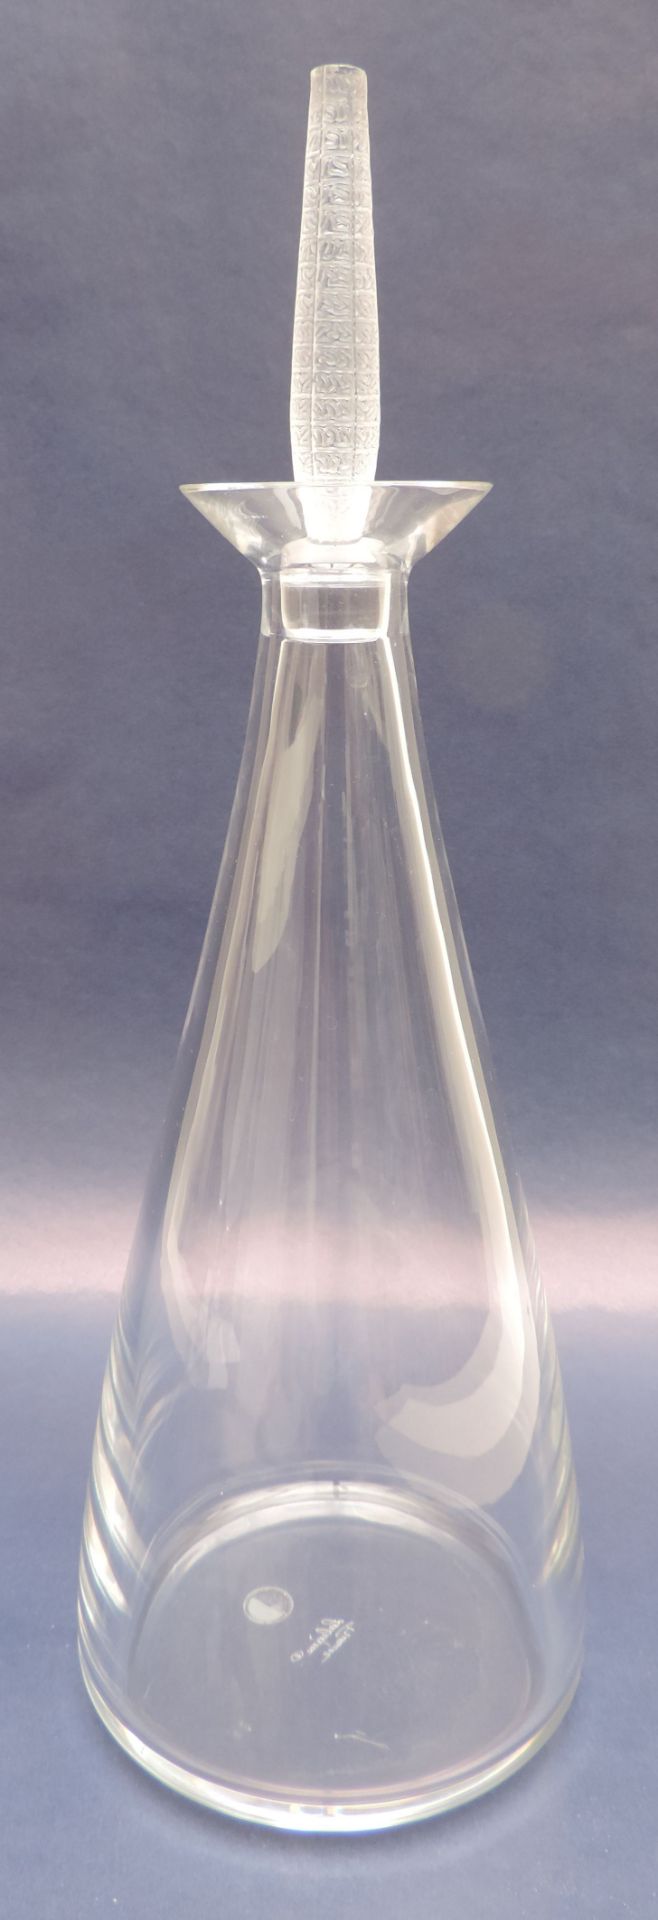 KARAFFE, Manuf René Lalique, Frankreich, Kristall, "Louvre", Entw Marie-Claude Lalique 1998,